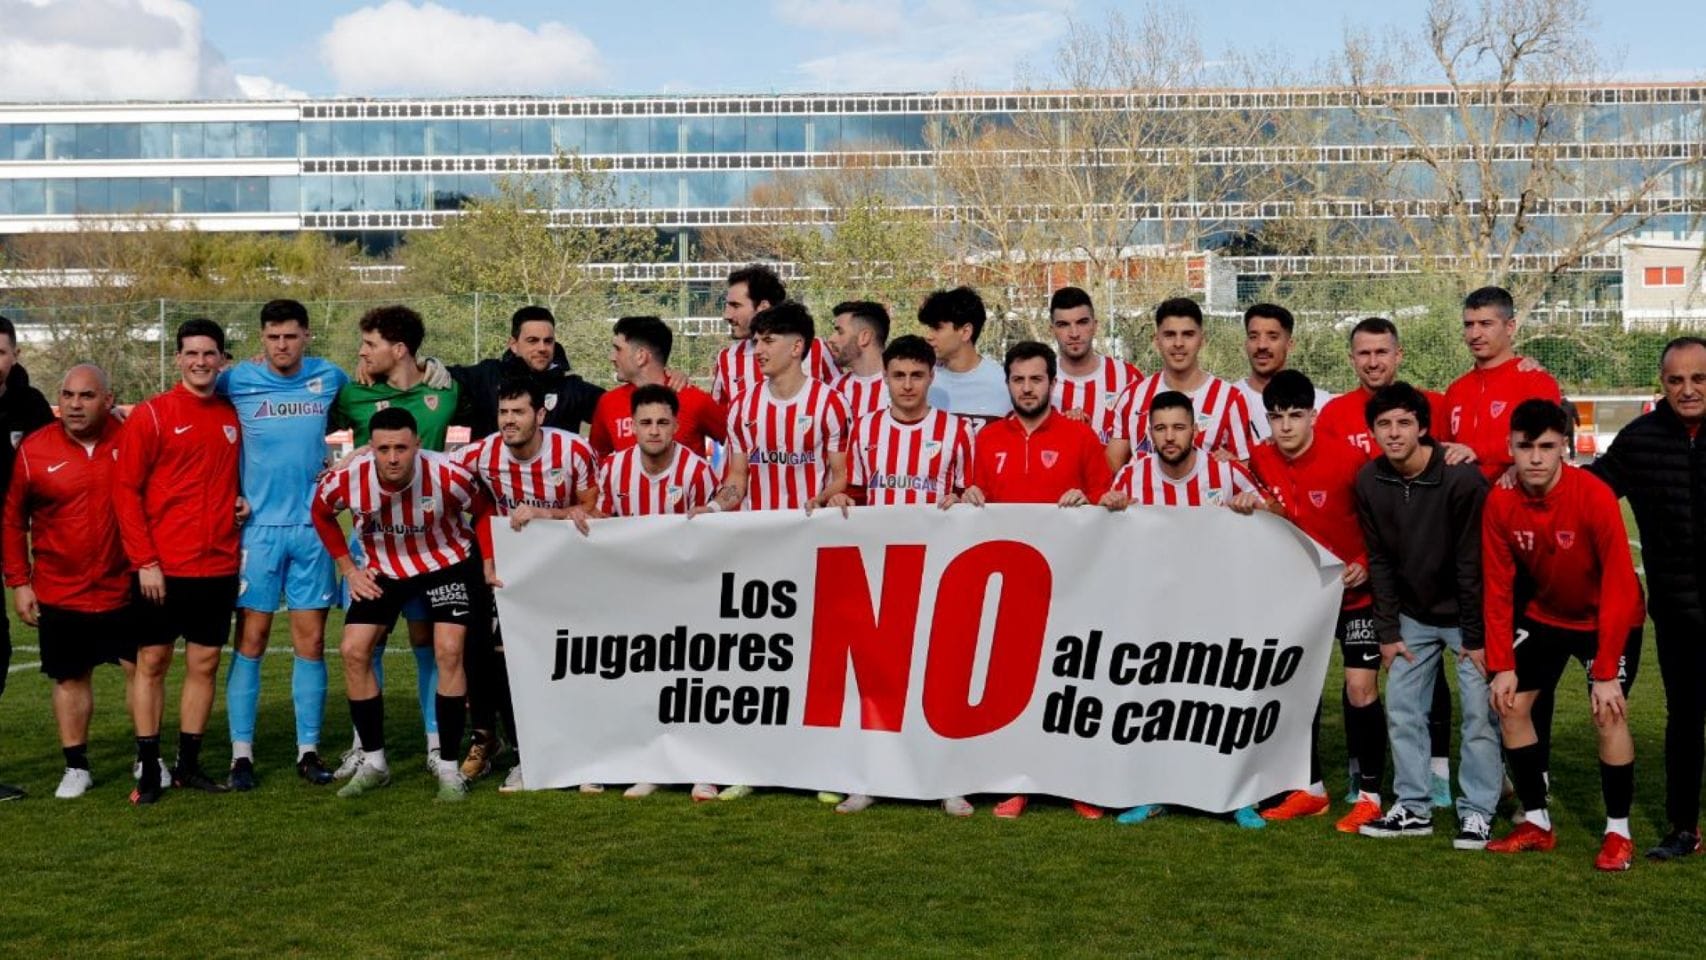 El primer equipo del Atlético Arteixo salió a Ponte dos Brozos contra el Polvorín con una pancarta en contra del cambio de césped